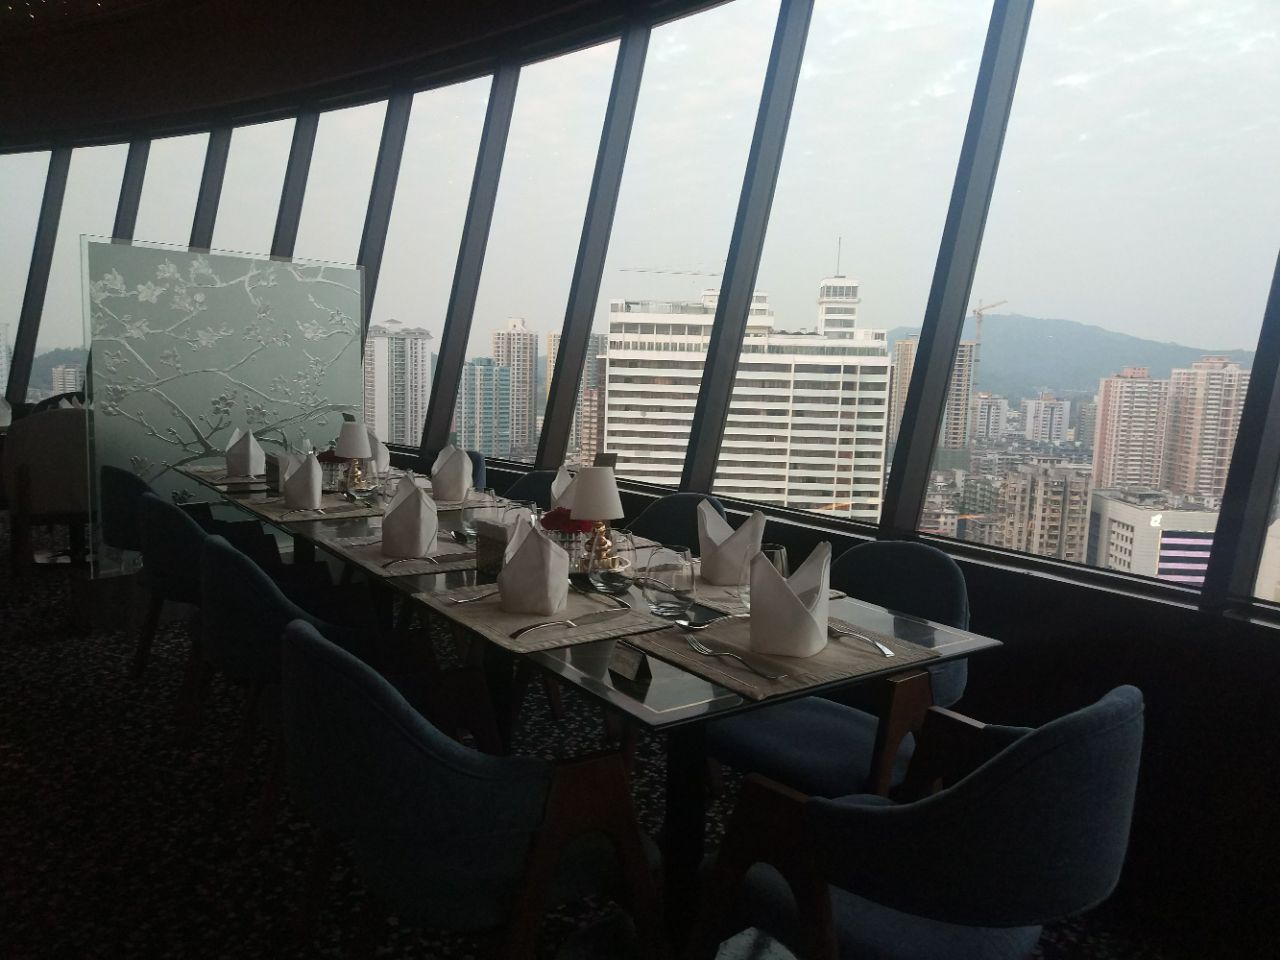 位于花园酒店的三十楼,旋转餐厅转得挺慢的,广州的夜景尽收眼底